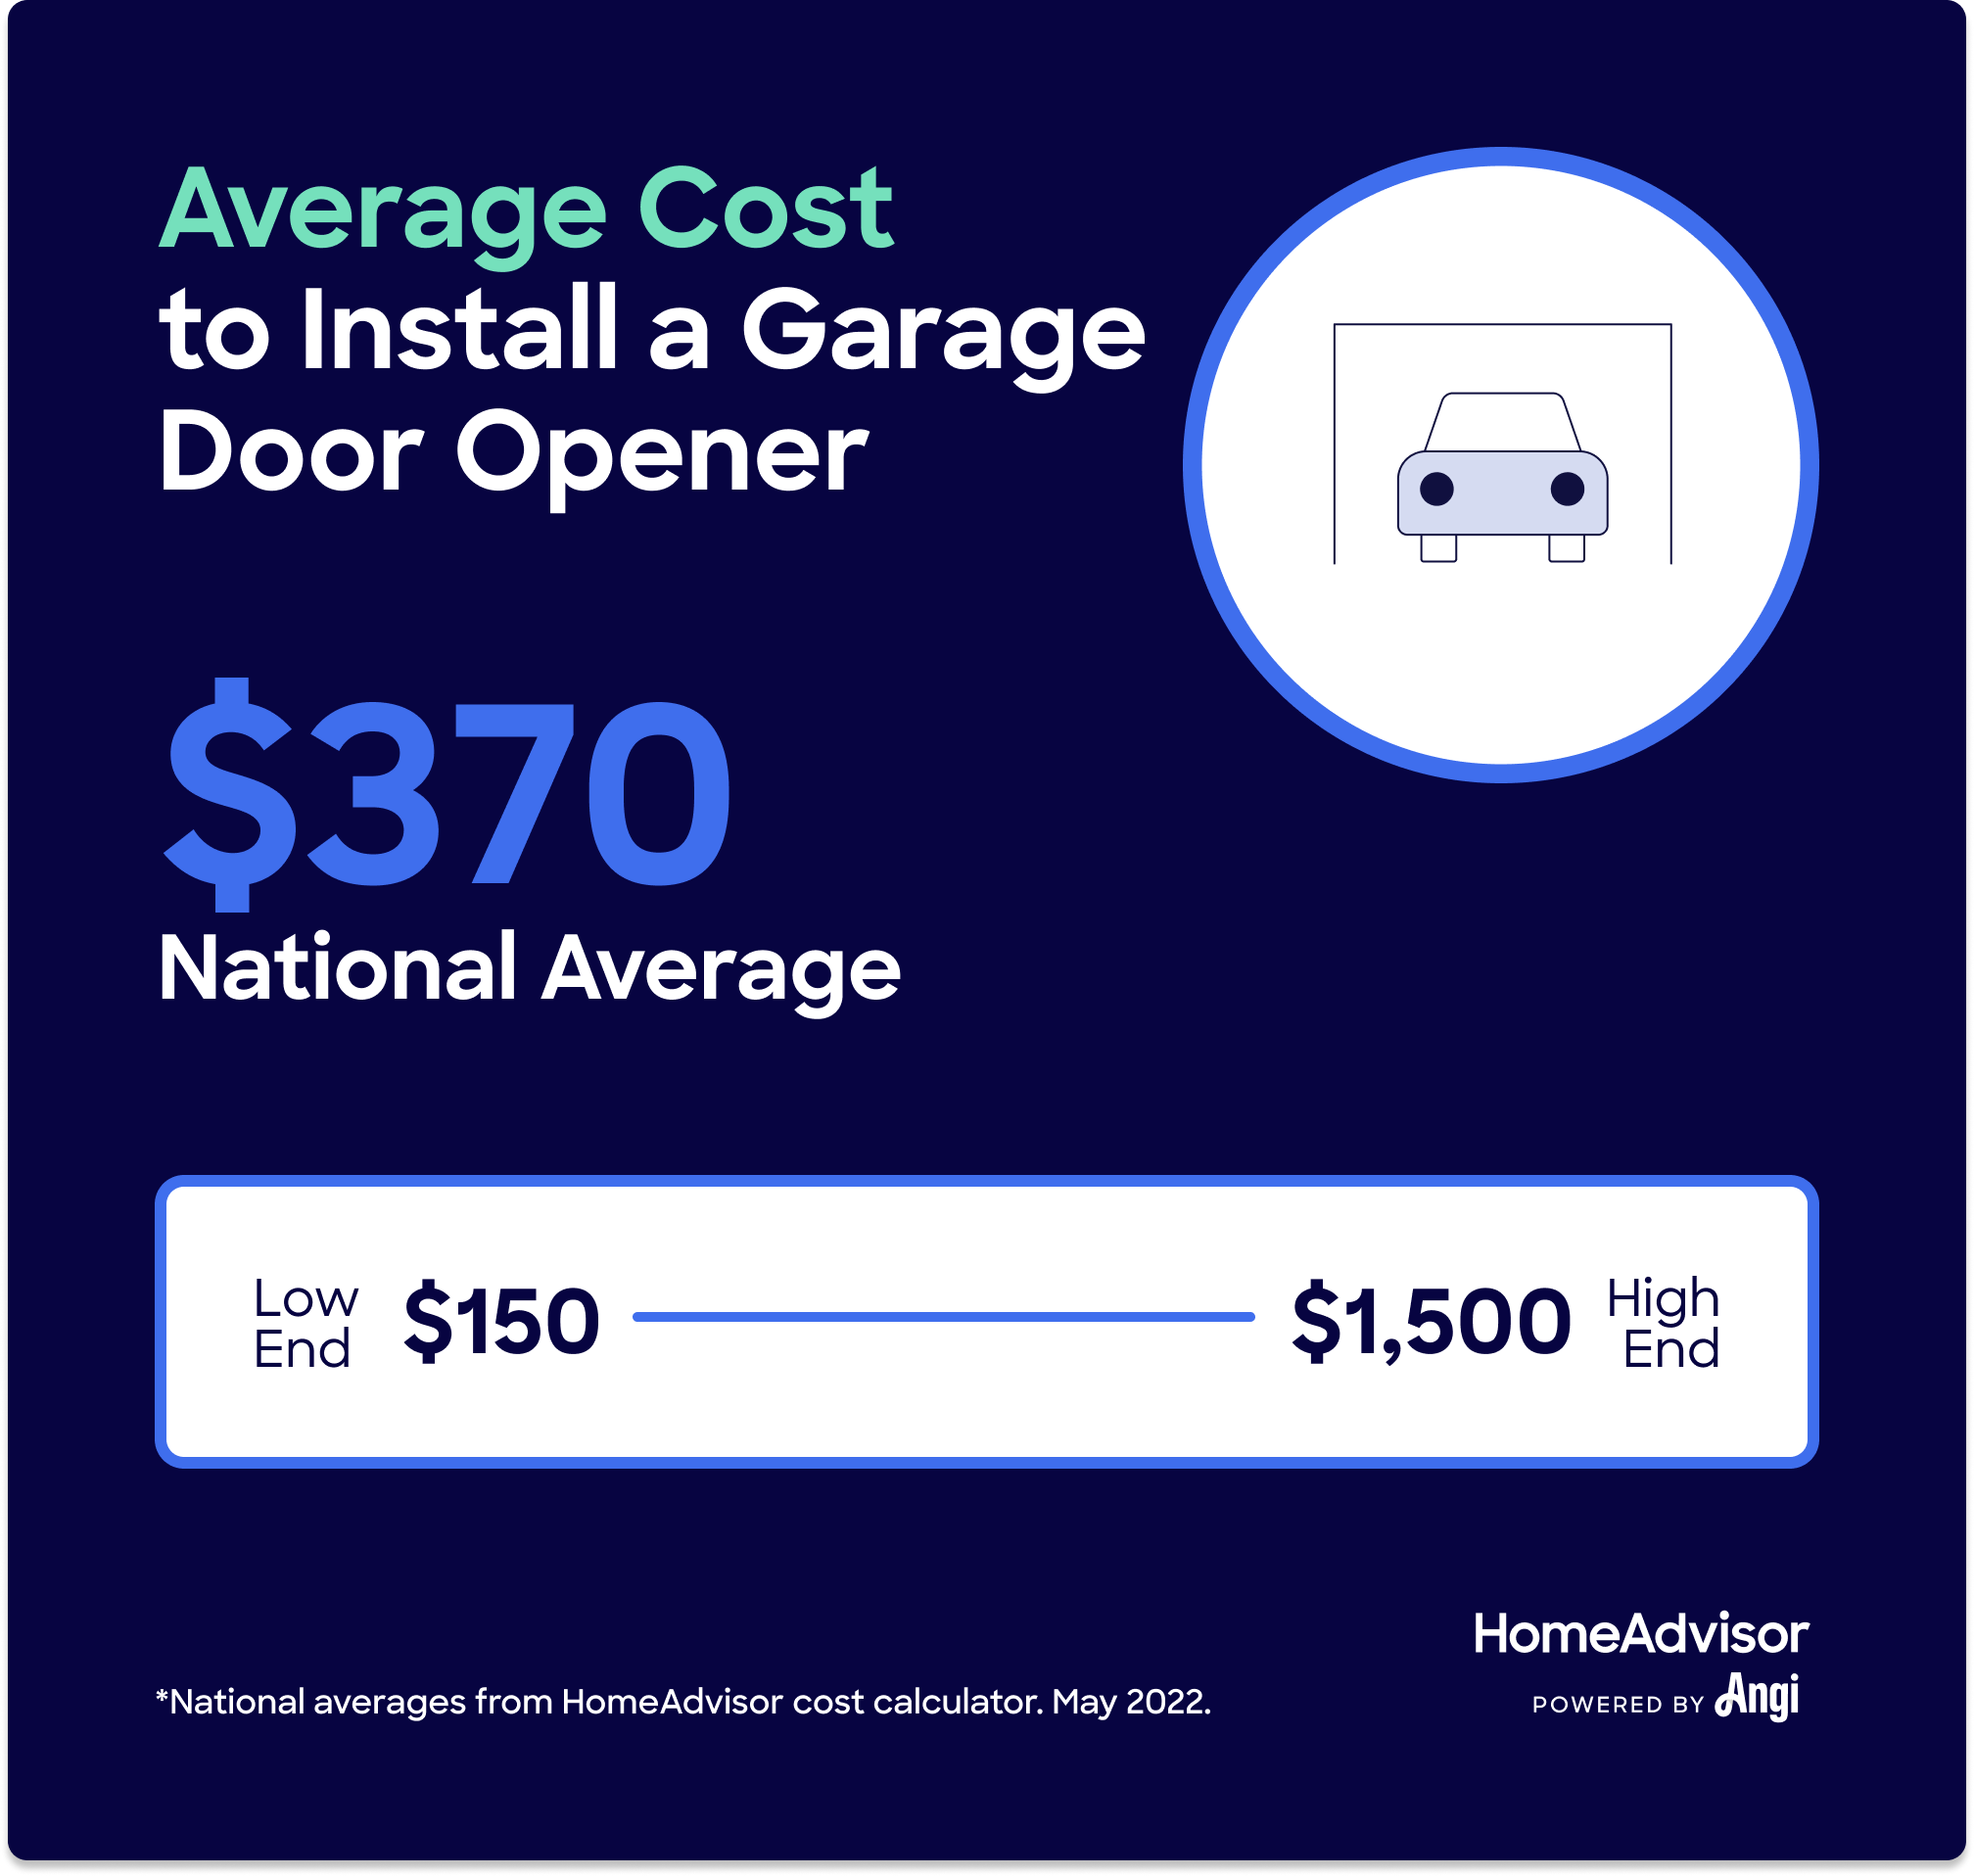 Cât costă un motor al ușii garajului?